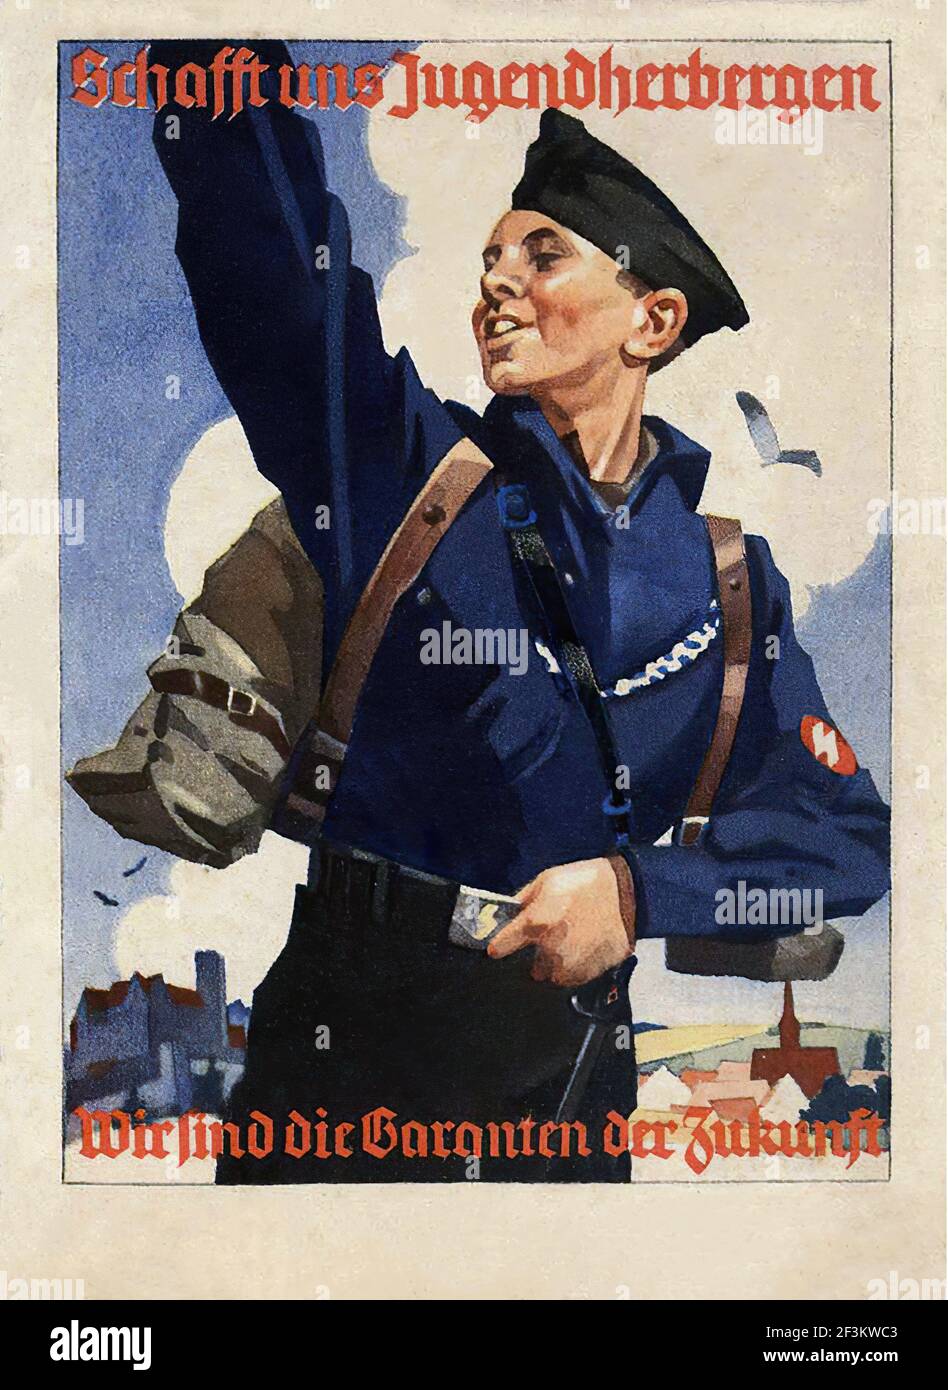 Póster de propaganda de la juventud alemana de Hitler. Alemania. 1930s-1940s Foto de stock